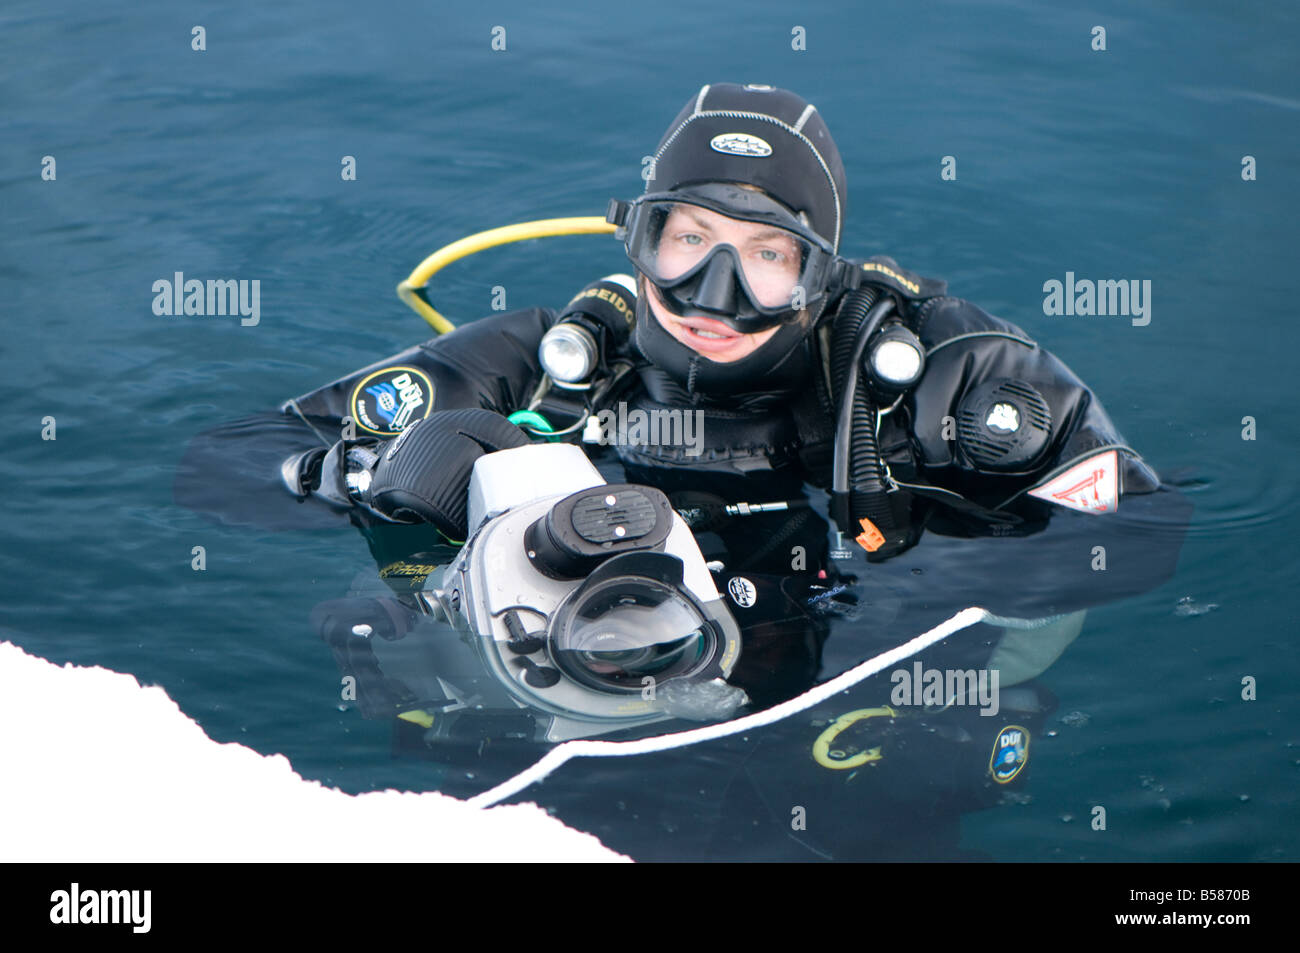 Hielo ártico camerawoman Christina Karliczek buceo buceo sub cero es en aguas árticas en menos de 1 a 8 grados centígrados viste un d Foto de stock